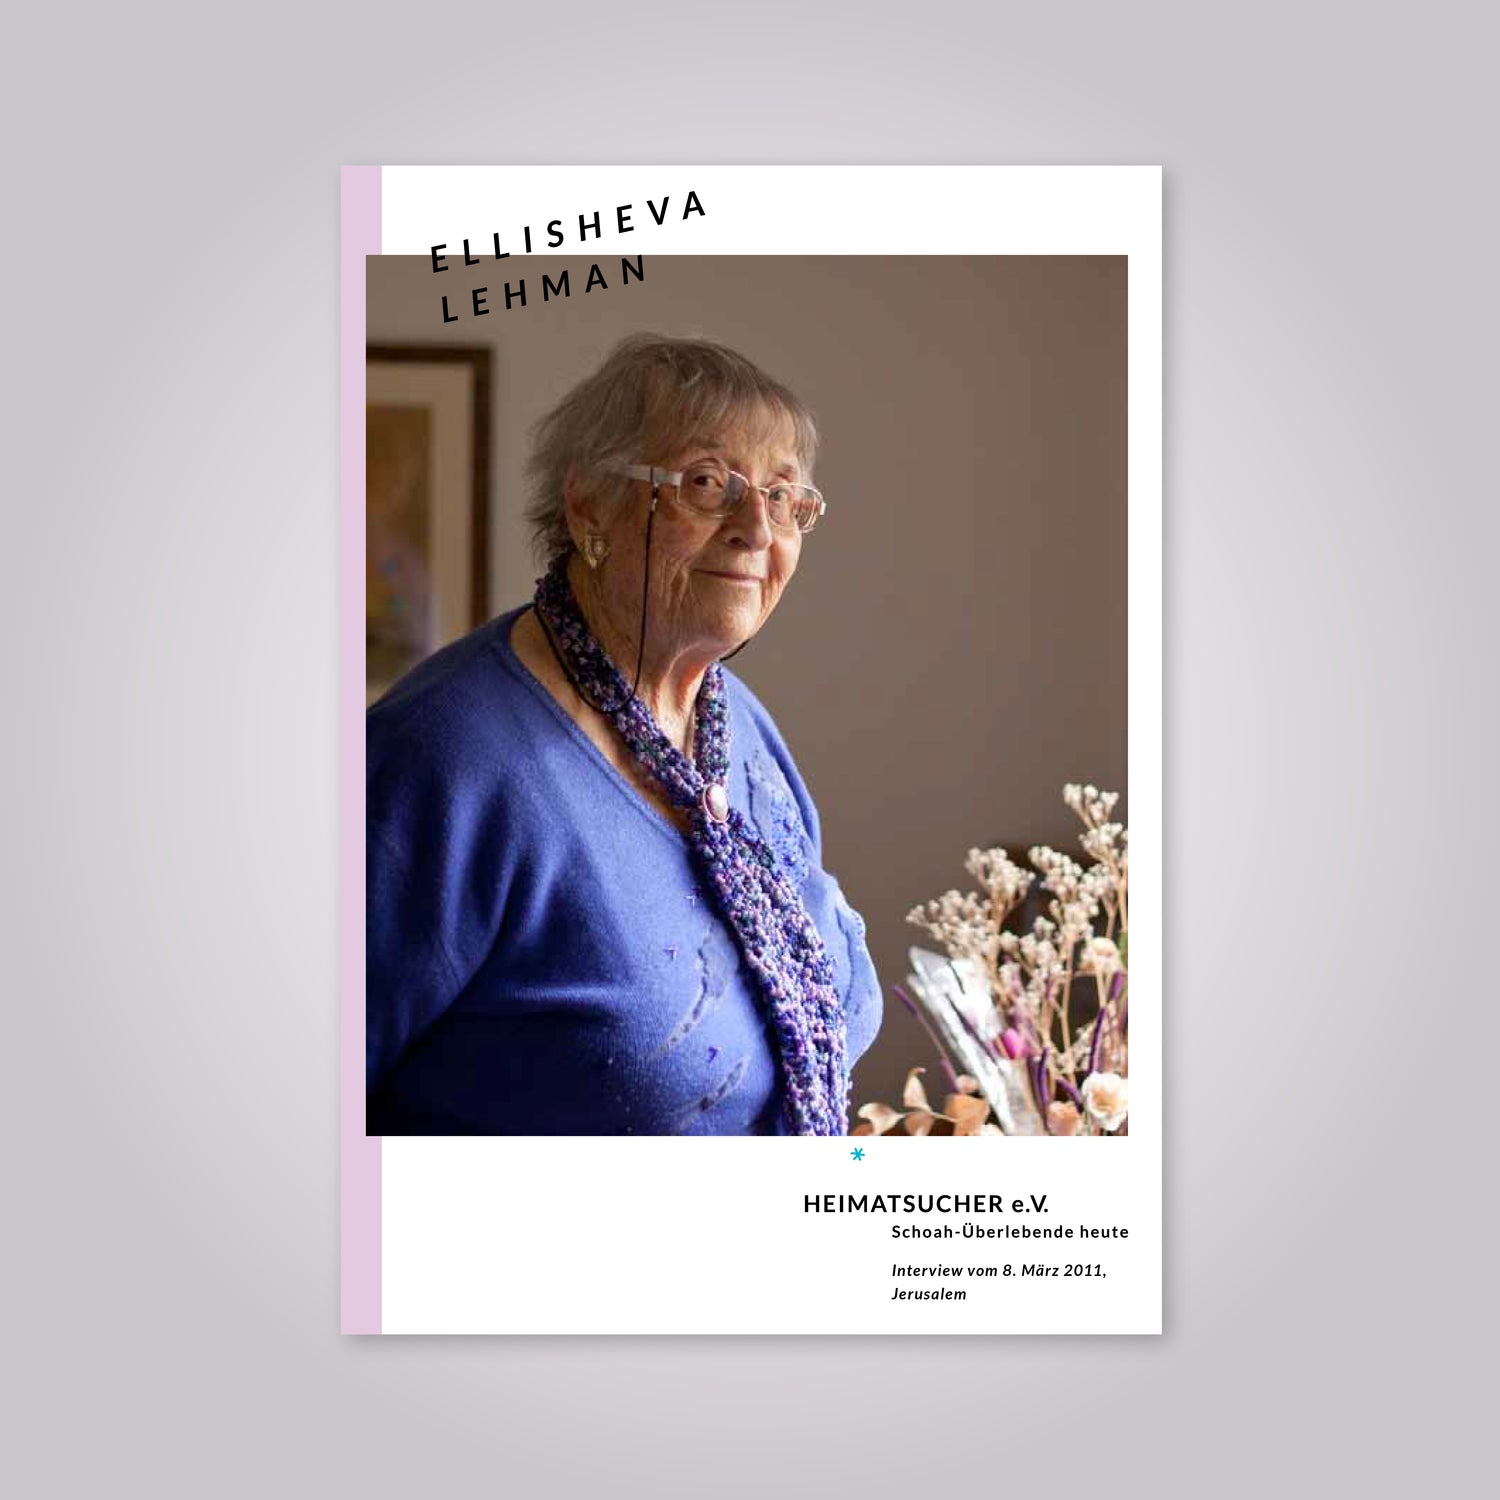 Magazin-Cover: Eine alte Frau mit grauen Haaren und Brille trägt einen blauen Pullover.